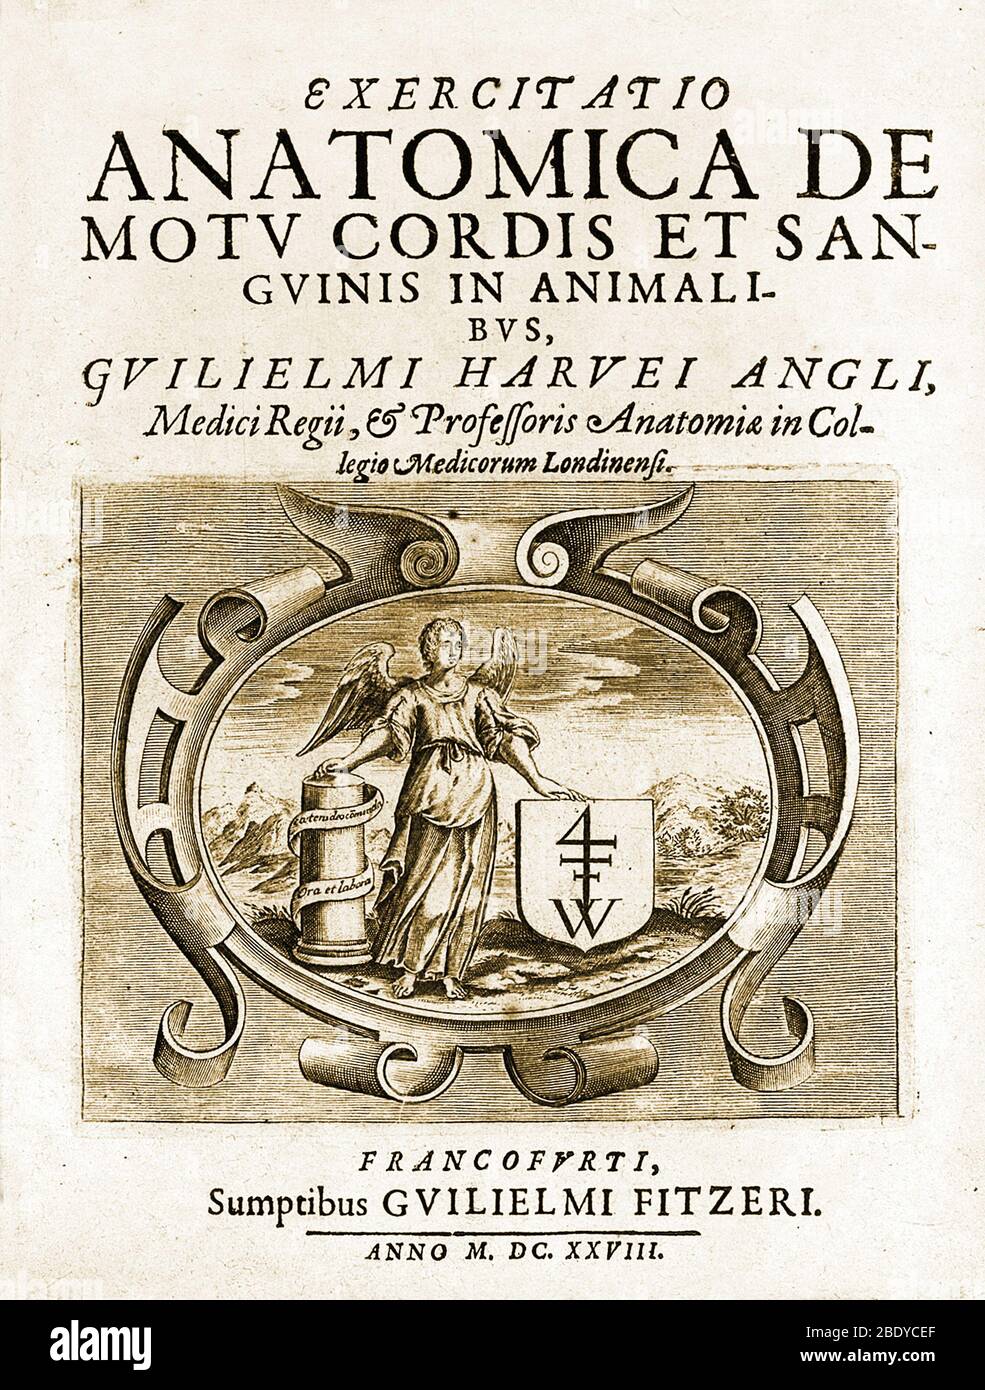 William Harvey, De Motu CORDIS, pagina del titolo, 1628 Foto Stock